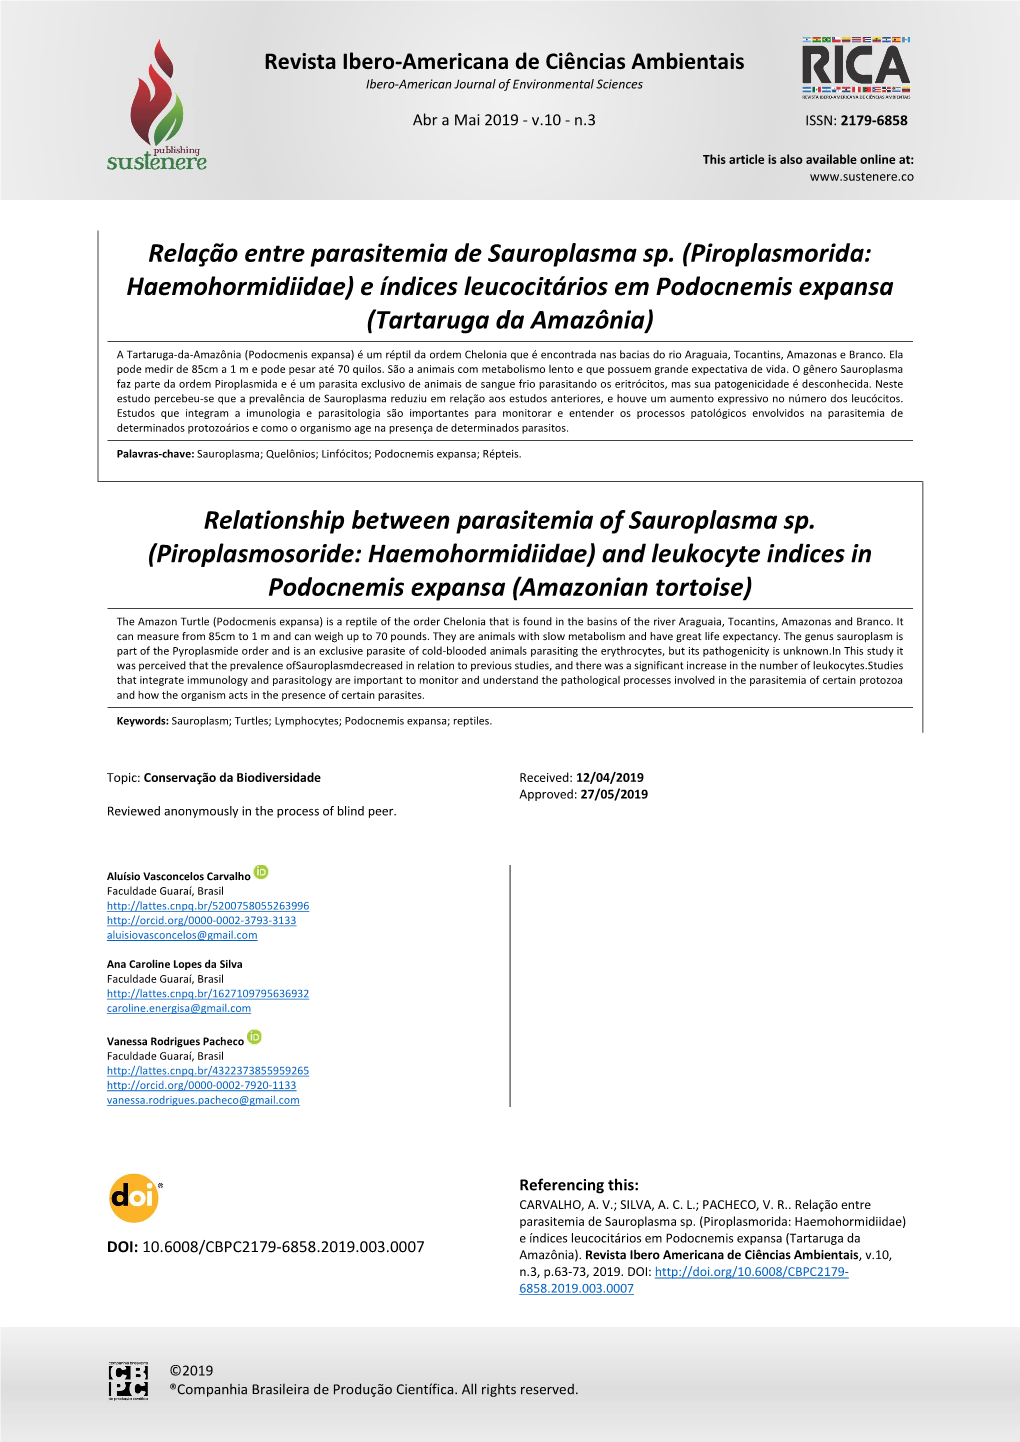 Relação Entre Parasitemia De Sauroplasma Sp. (Piroplasmorida: Haemohormidiidae) E Índices Leucocitários Em Podocnemis Expansa (Tartaruga Da Amazônia)